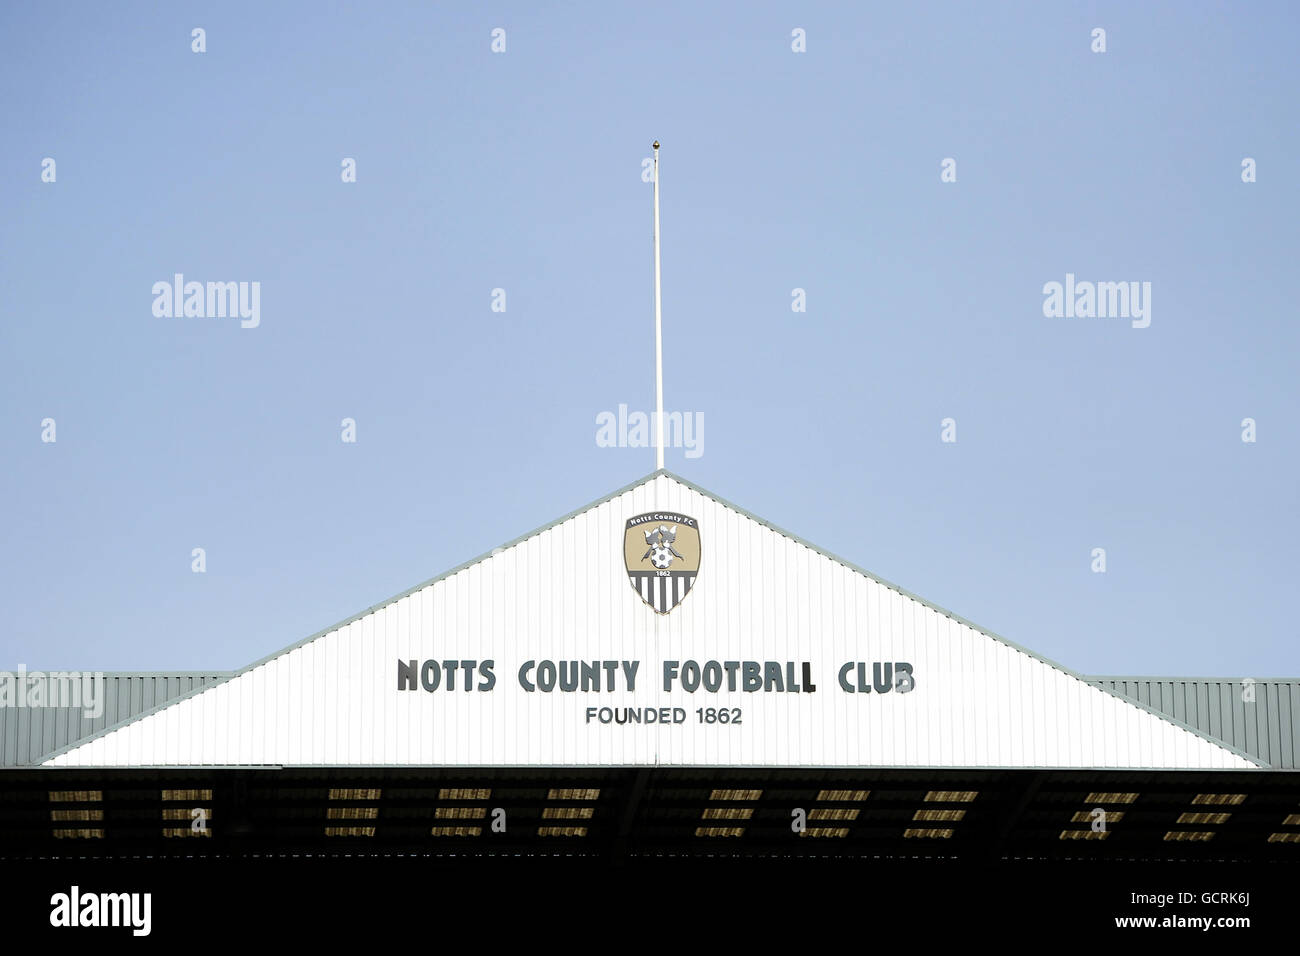 Gesamtansicht der Spitze des Jimmy Sirrel Stands Mit den Worten Notts County Football Club und der Club's Abzeichen und Wappen Stockfoto